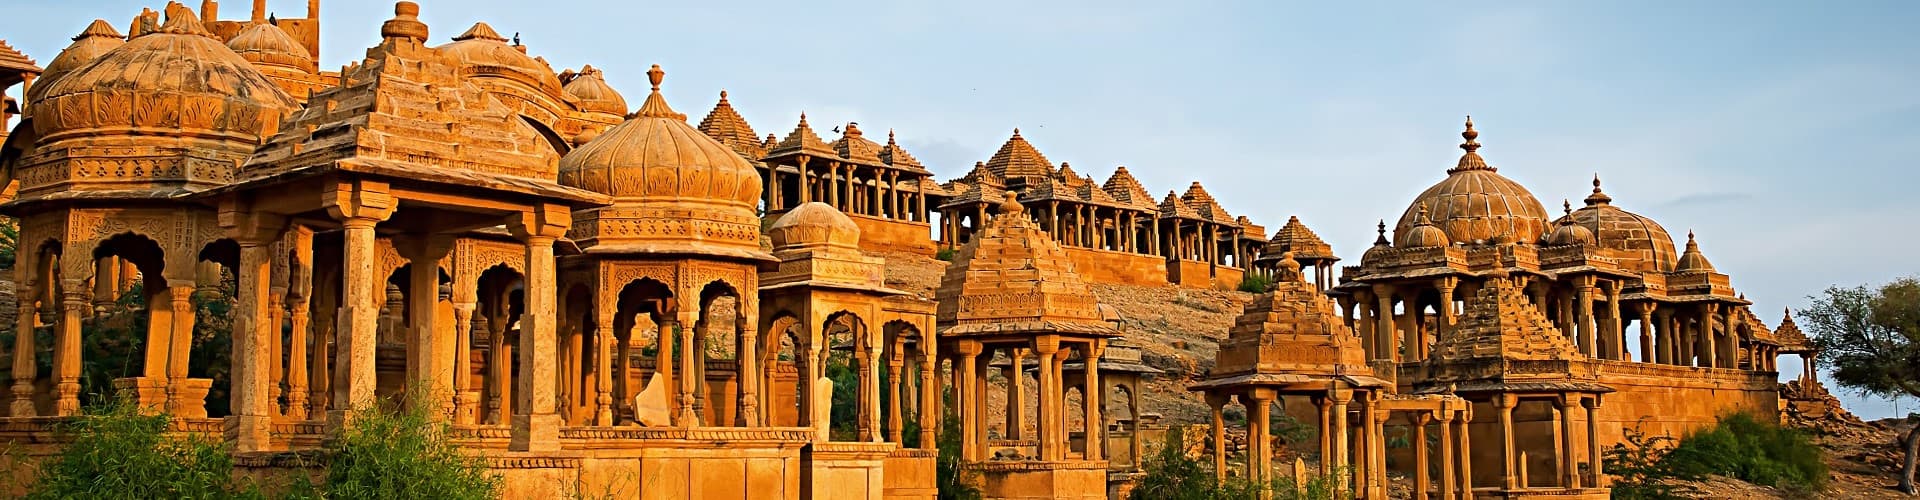 Essential Free Tour Jaisalmer Banner